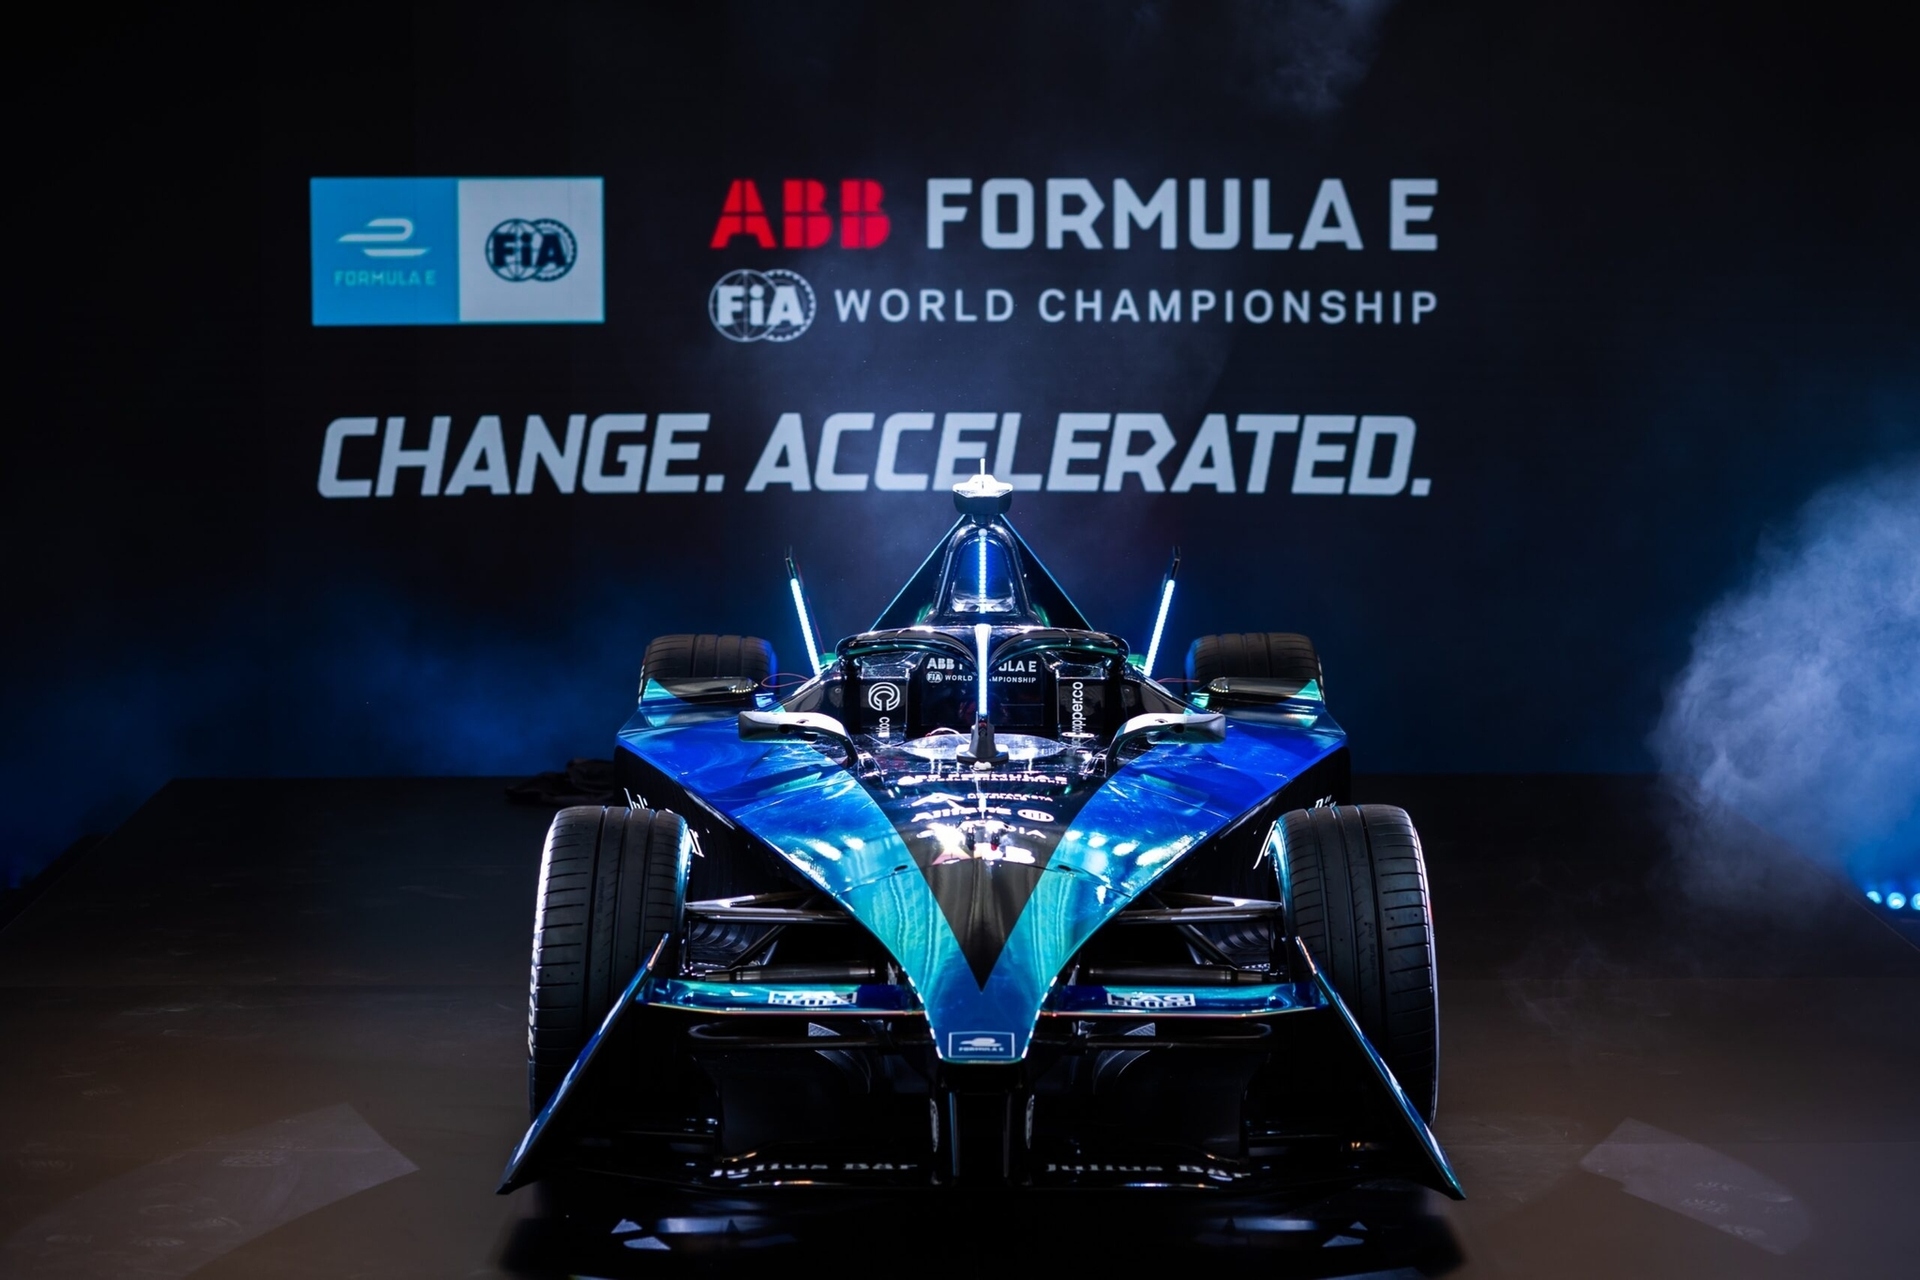 „Gen3“: vienvietis „Gen3“ yra labai novatoriškas ir bus naudojamas nuo devintojo FIA ABB „Formulės E“ pasaulio čempionato sezono.